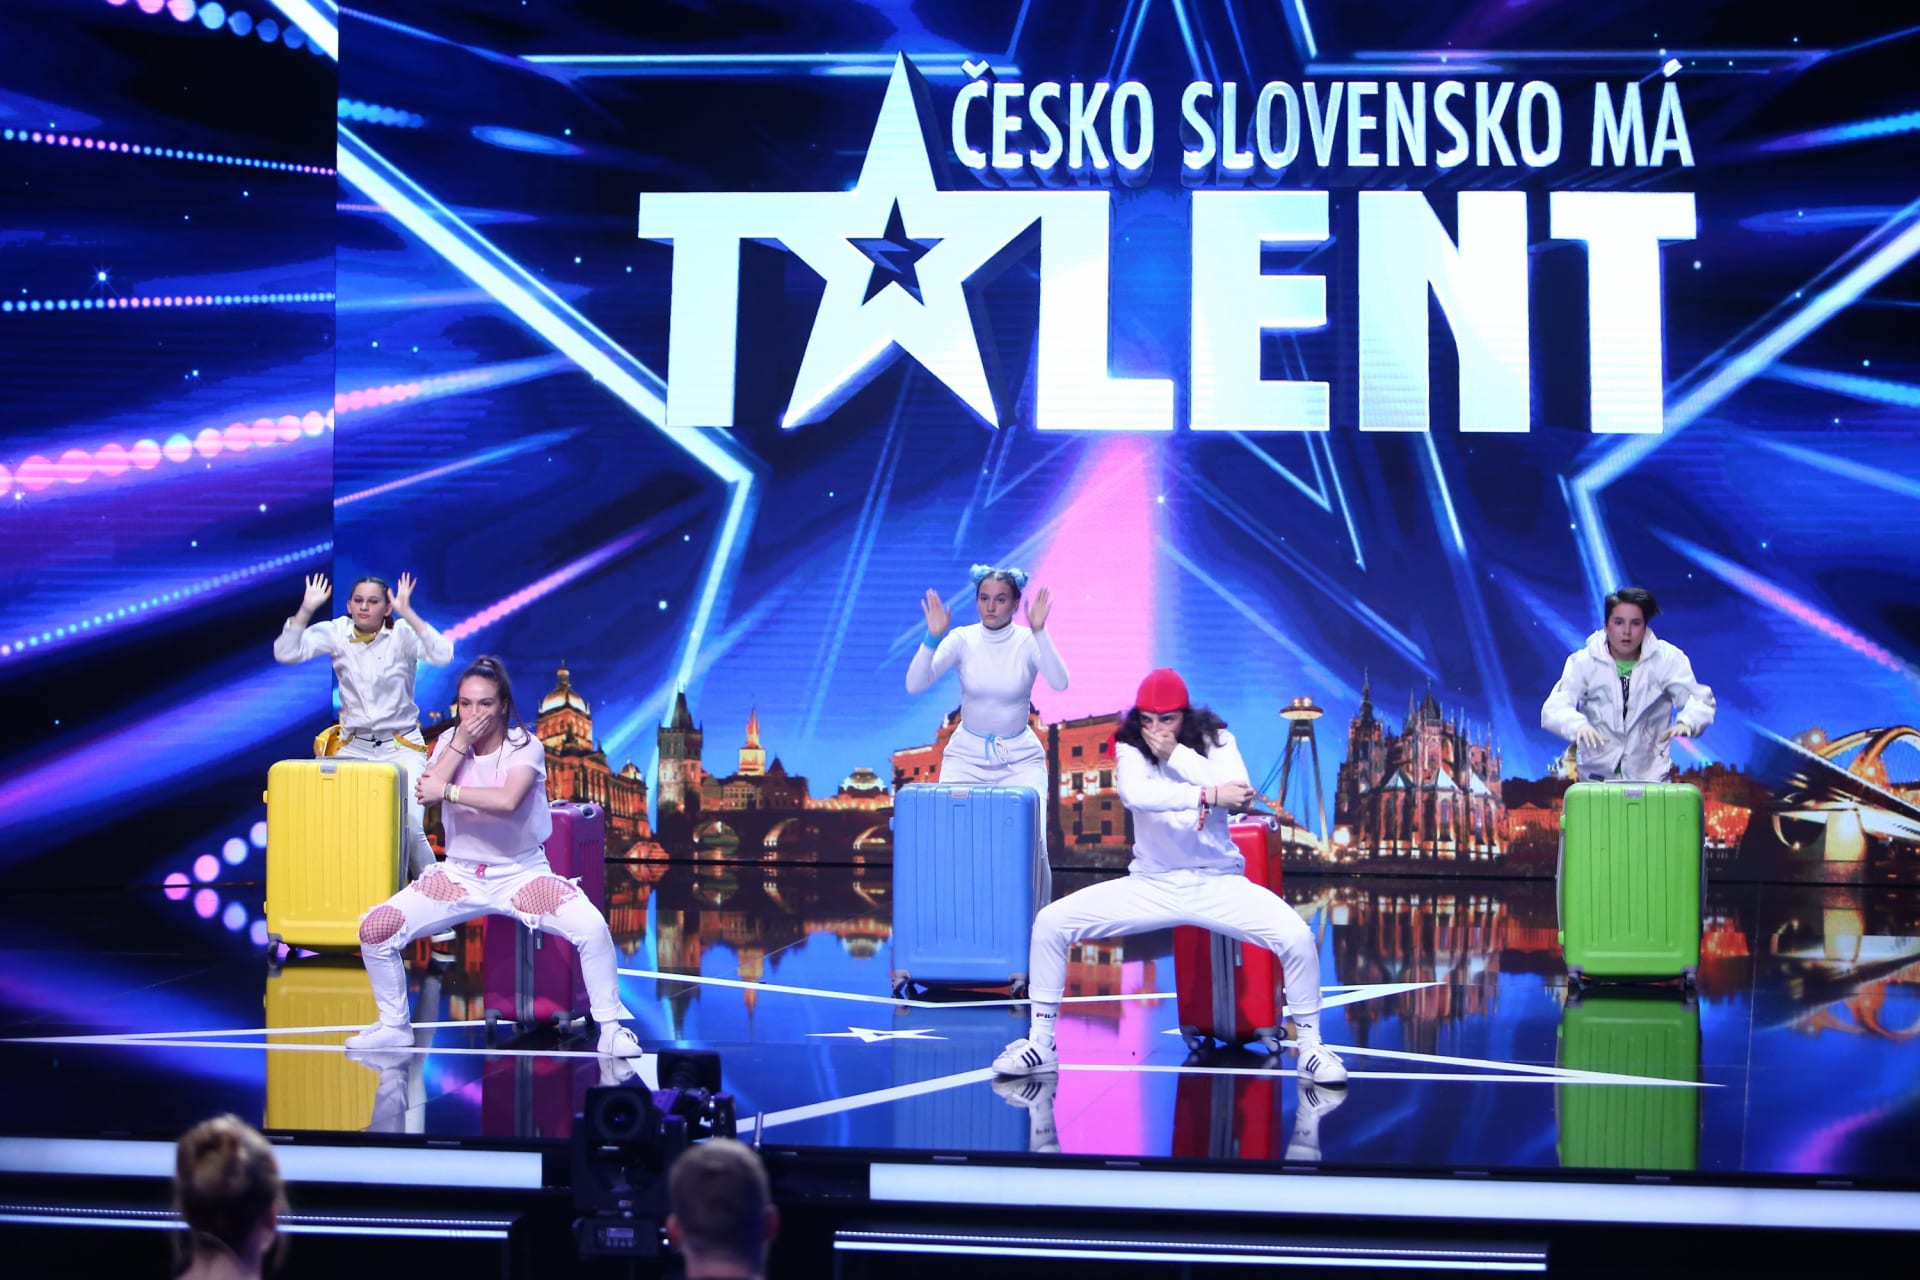 Česko Slovensko má talent odkrývá další a další talenty